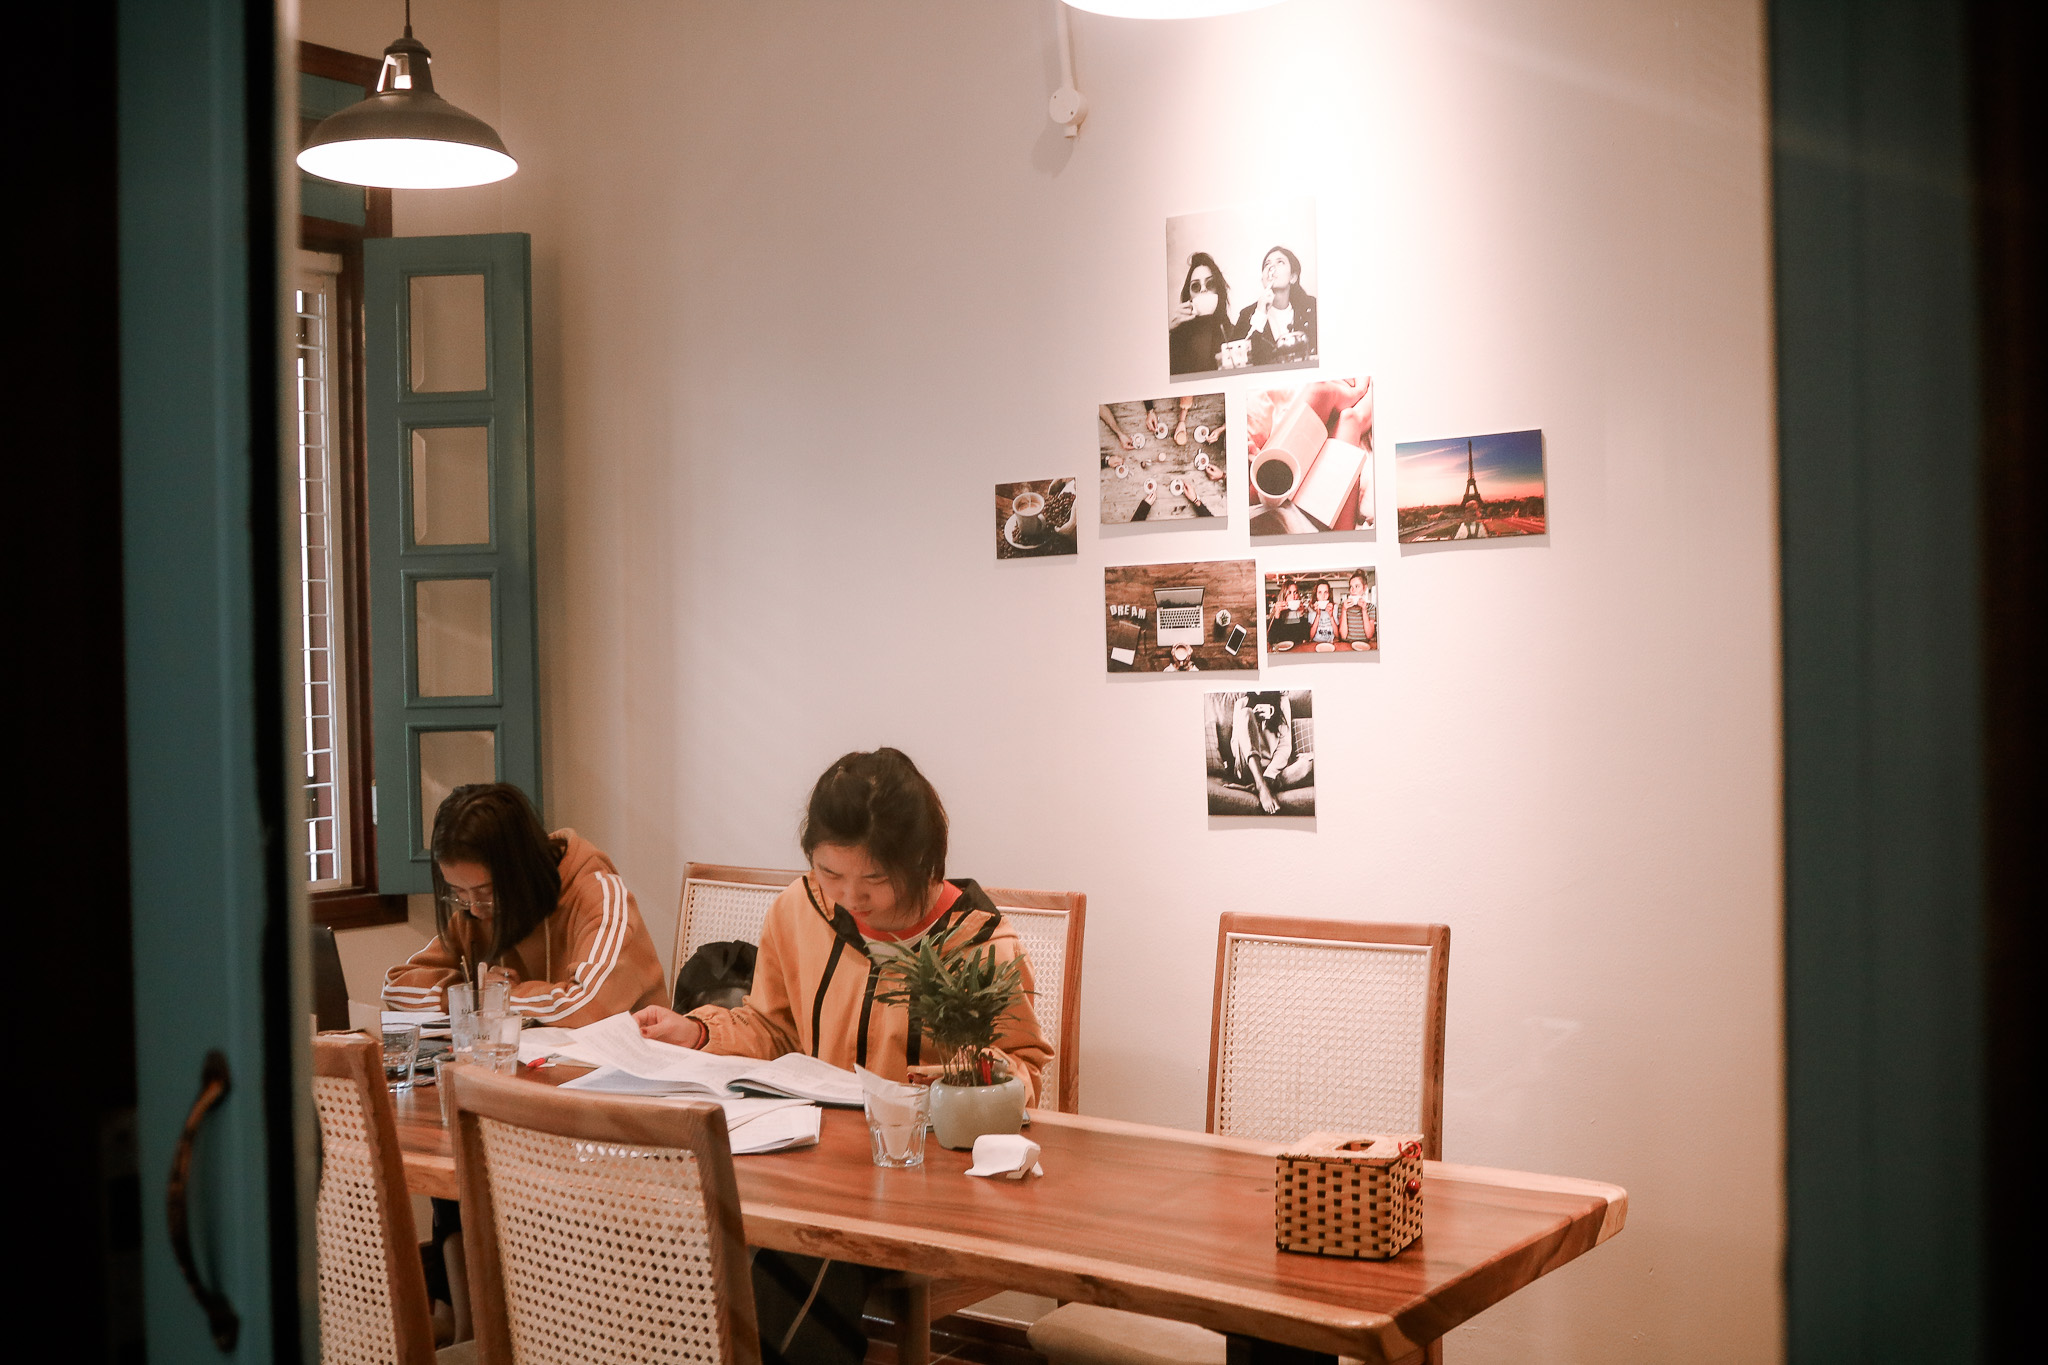 quán cafe yên tĩnh ở Hà Nội